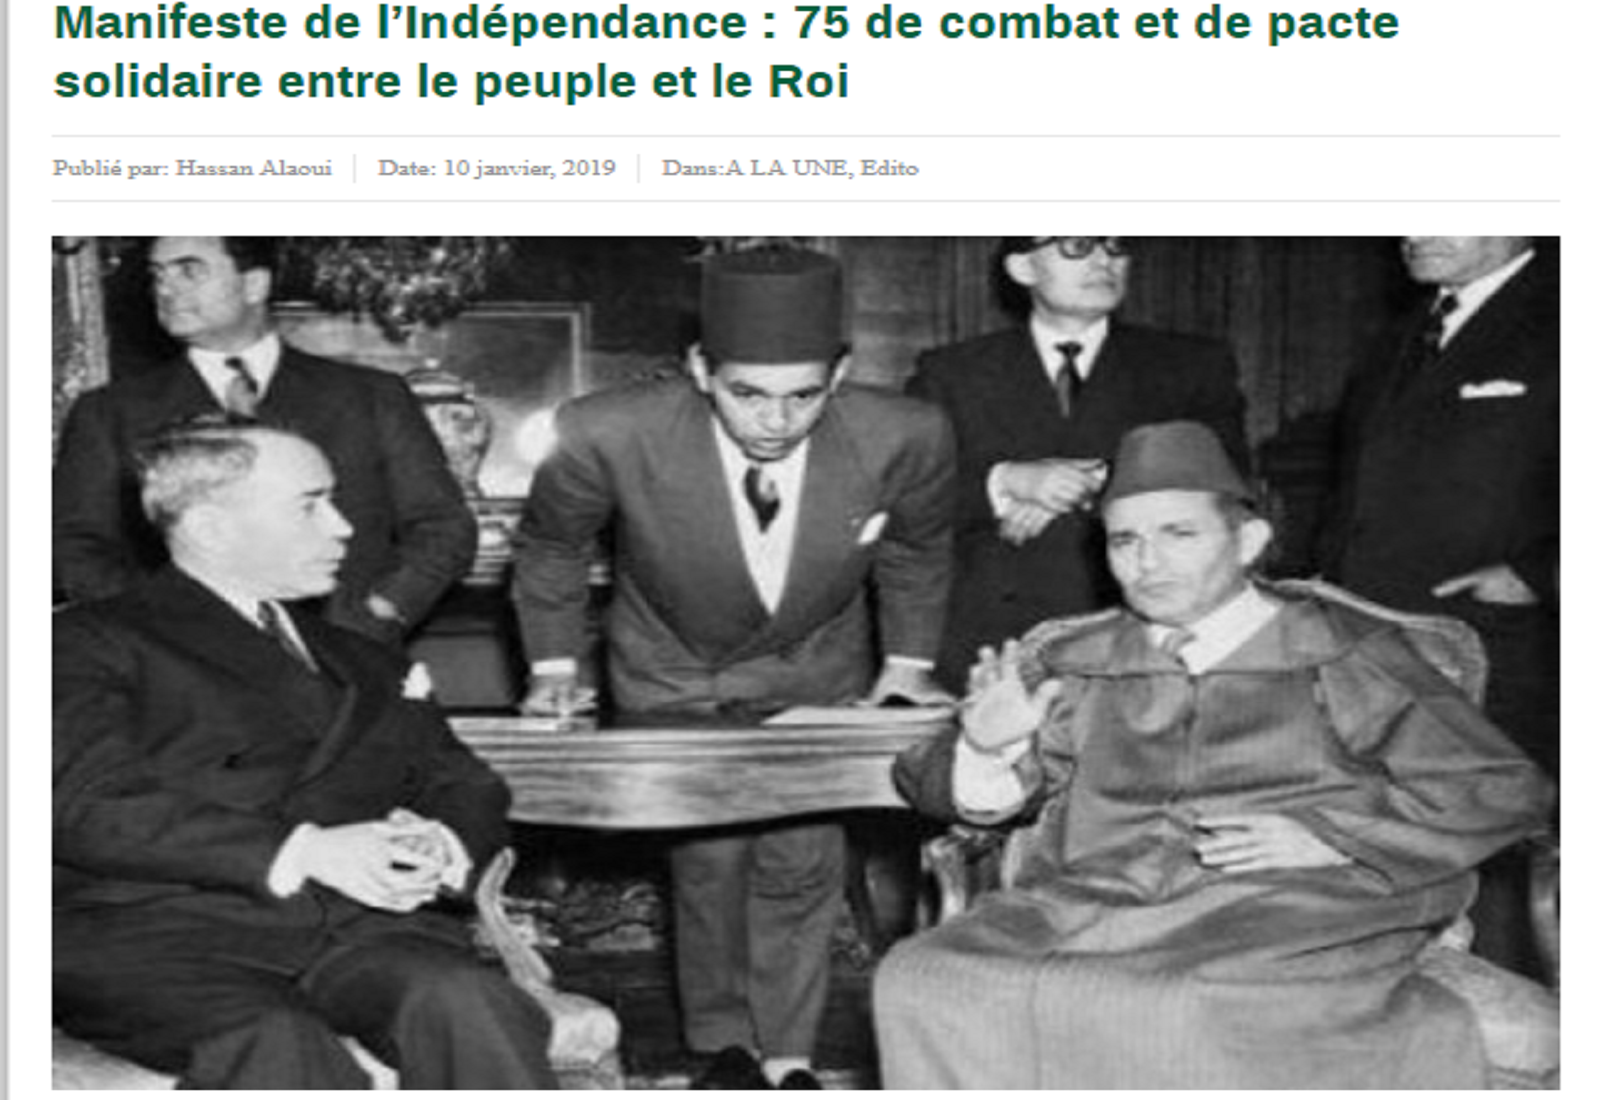 Manifeste de l’Indépendance : 75 de combat et de pacte solidaire entre le peuple et le Roi